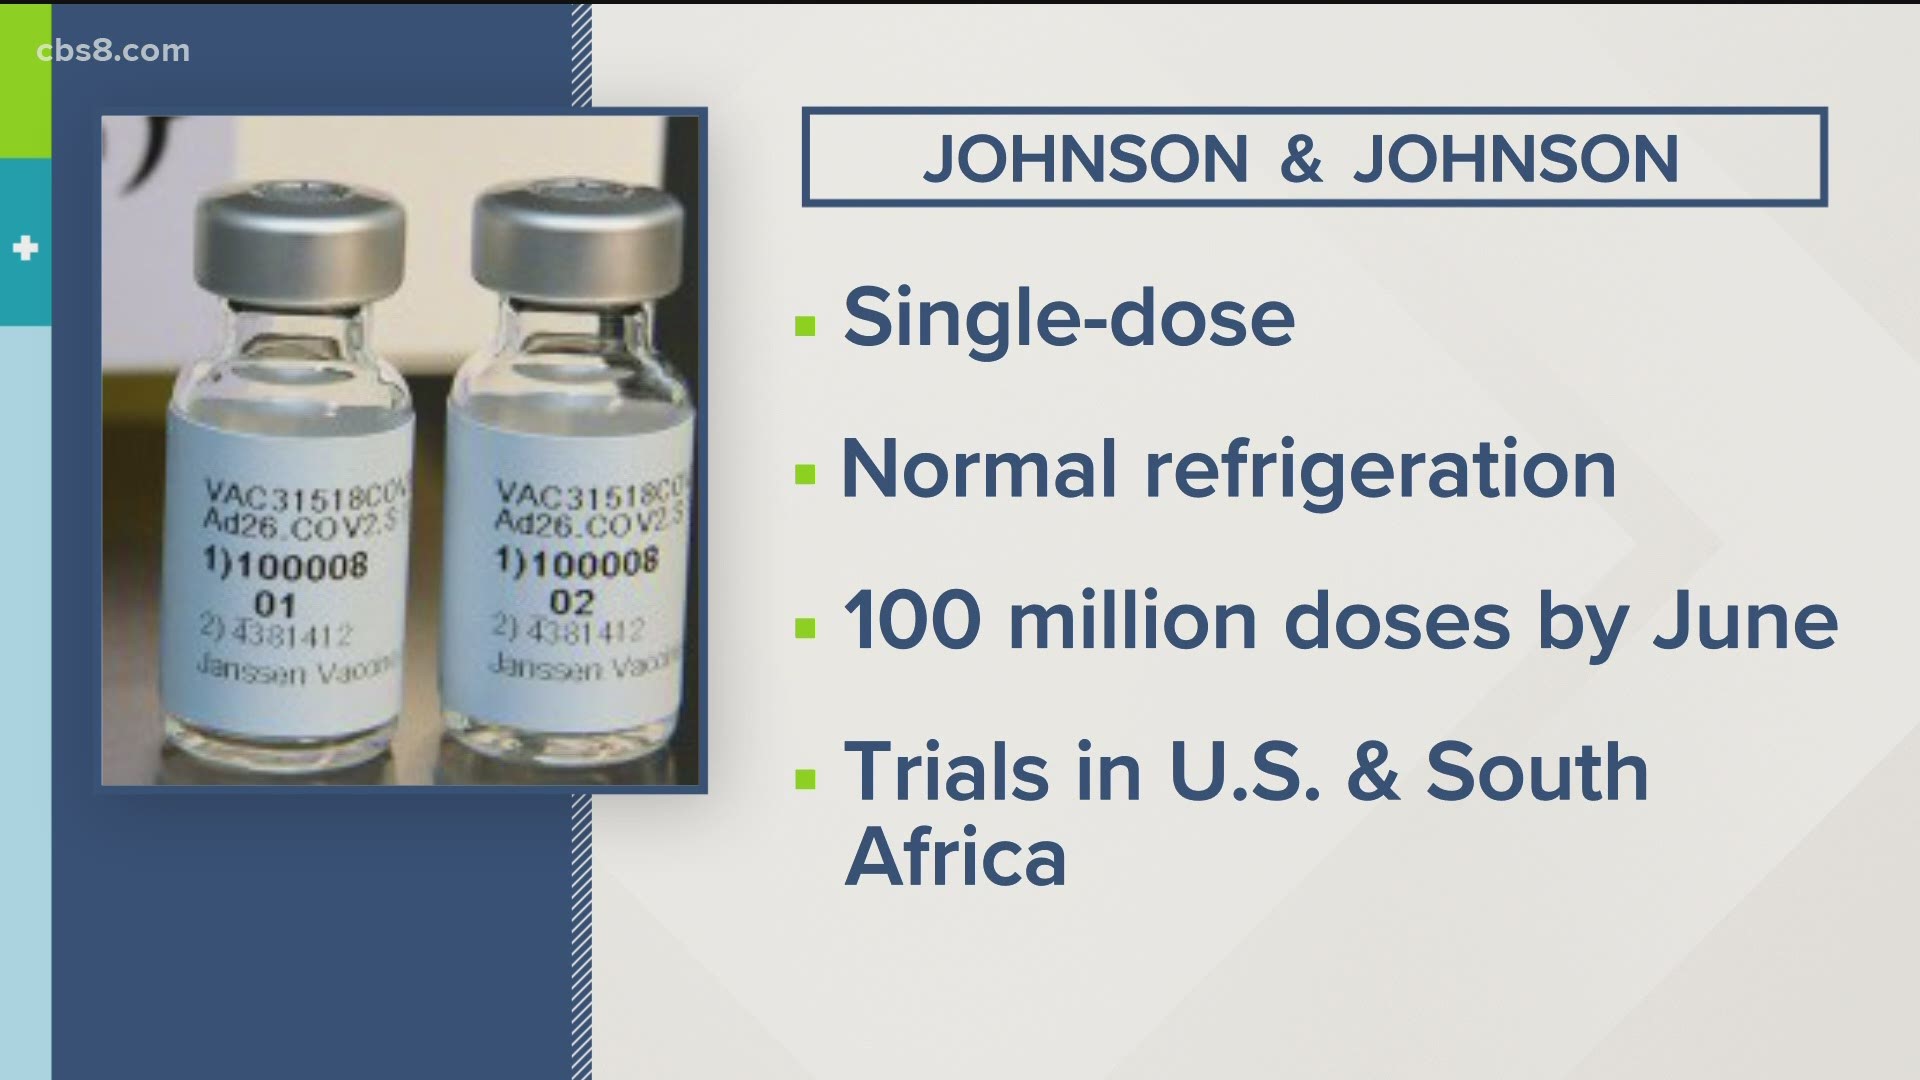 Η Johnson & Johnson υπέβαλε αίτηση στον FDA για το εμβόλιό της